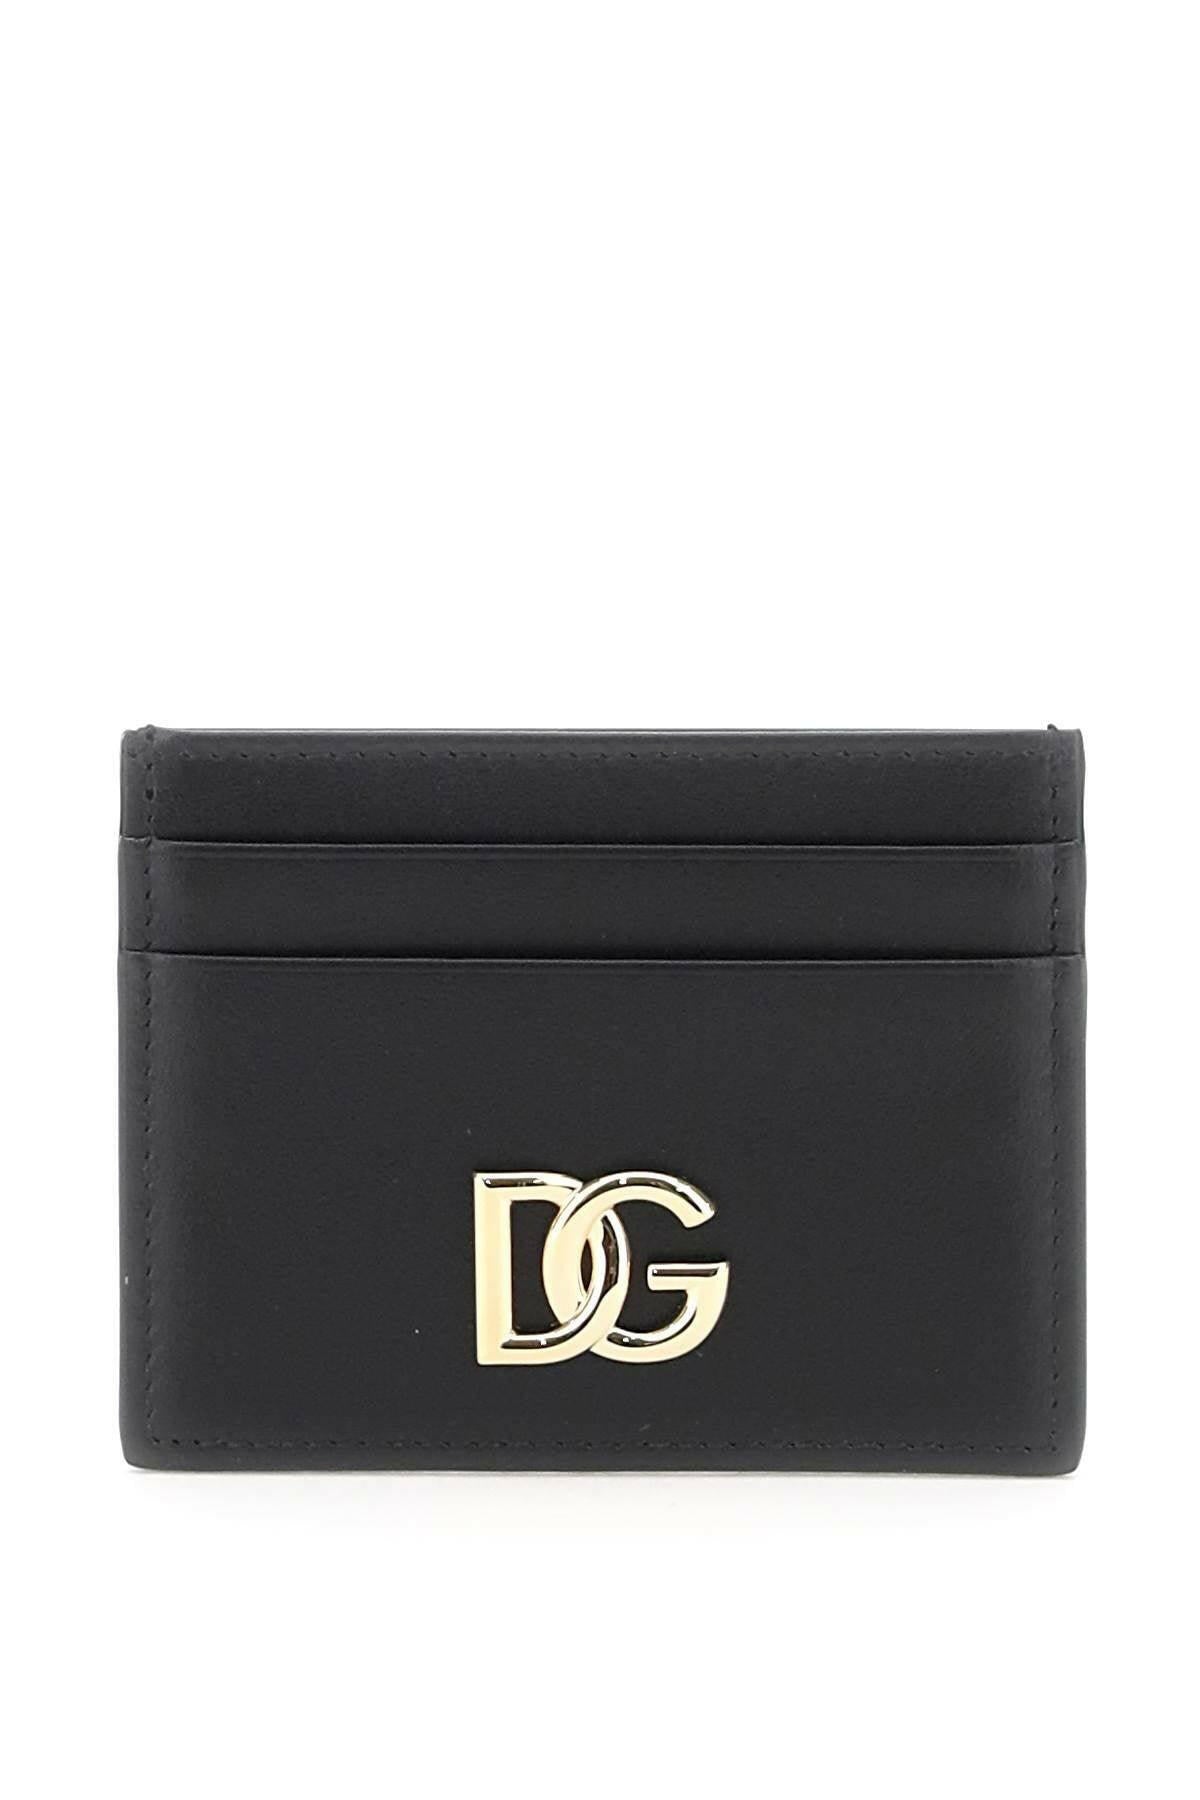 Dolce & Gabbana Dg Card Holder - JOHN JULIA